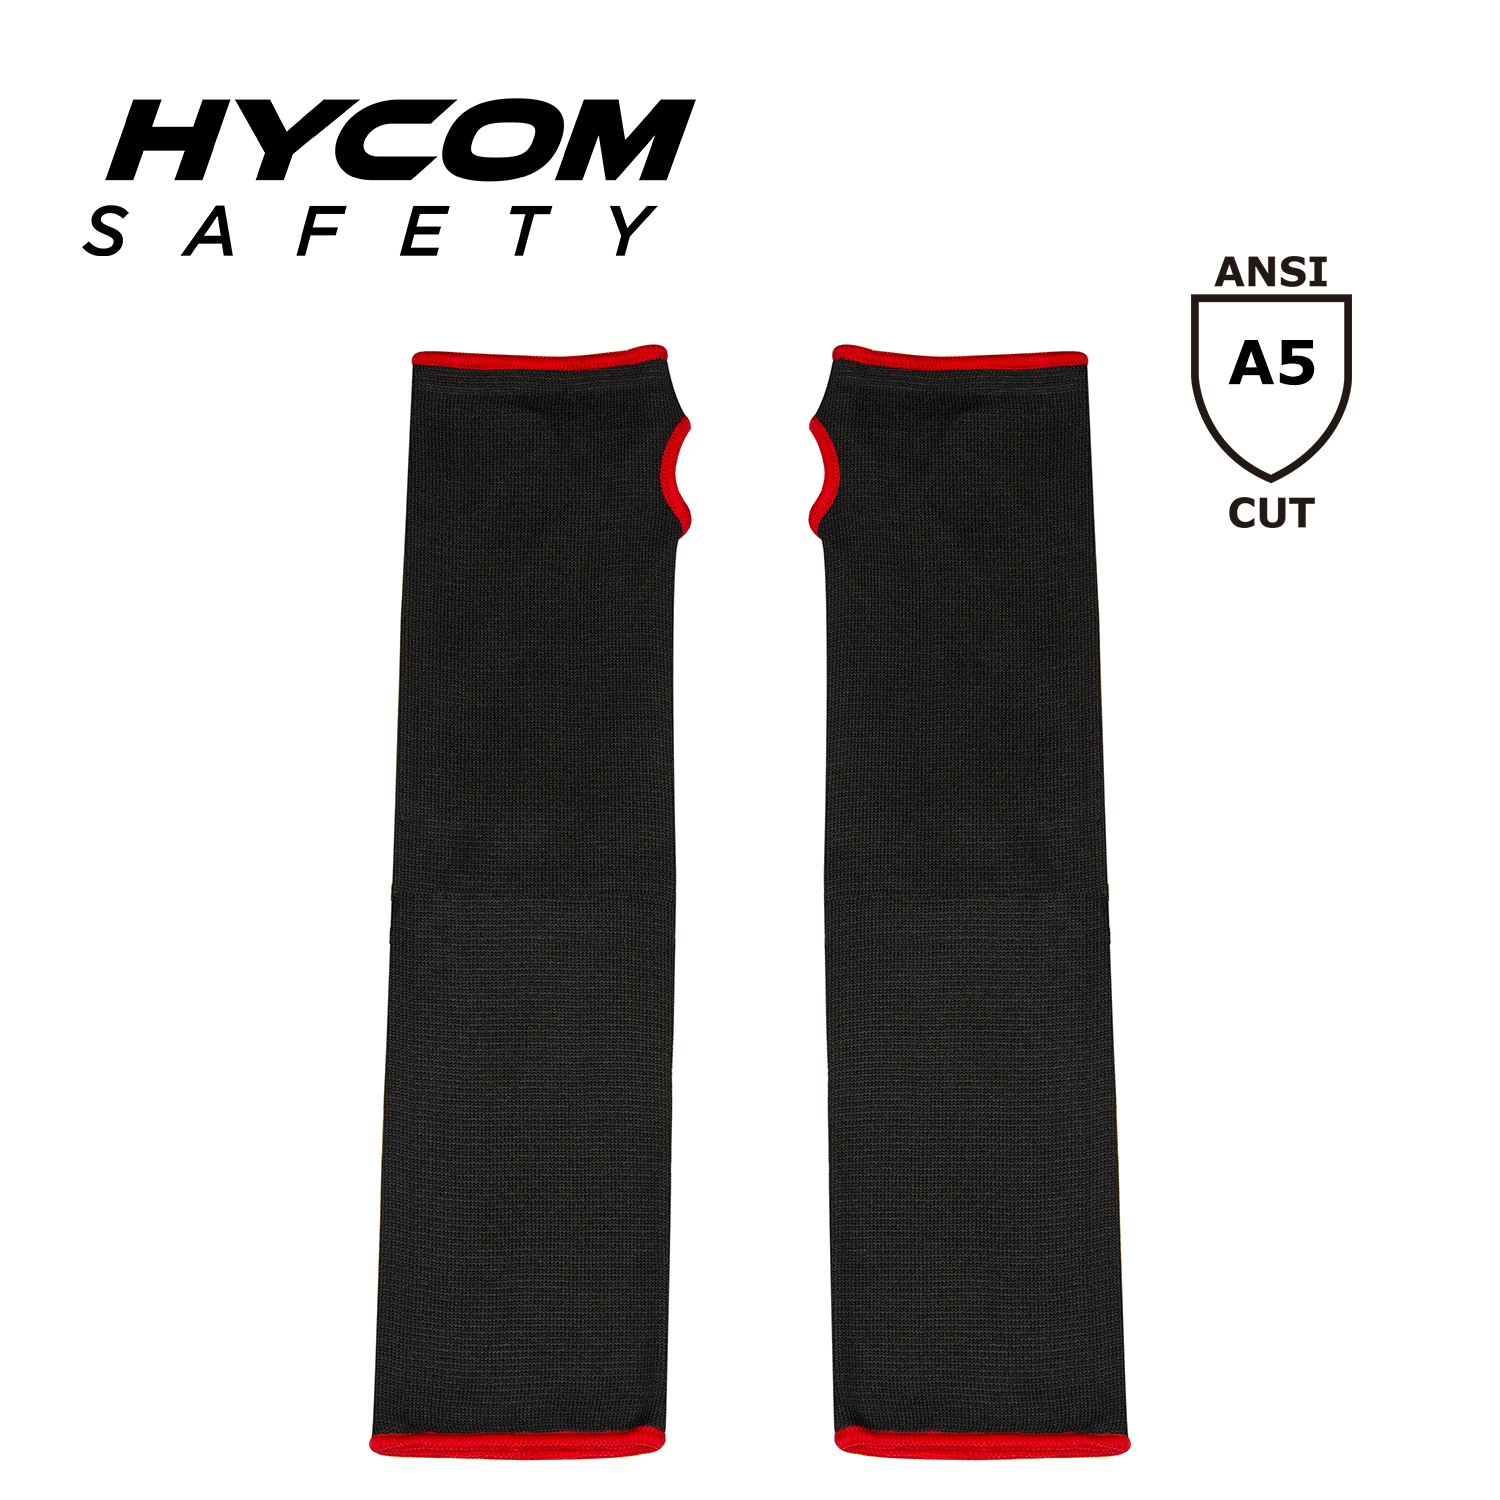 HYCOM Manga de brazo resistente a cortes ANSI 5 de la mejor calidad con ranura para el pulgar en trabajos de seguridad